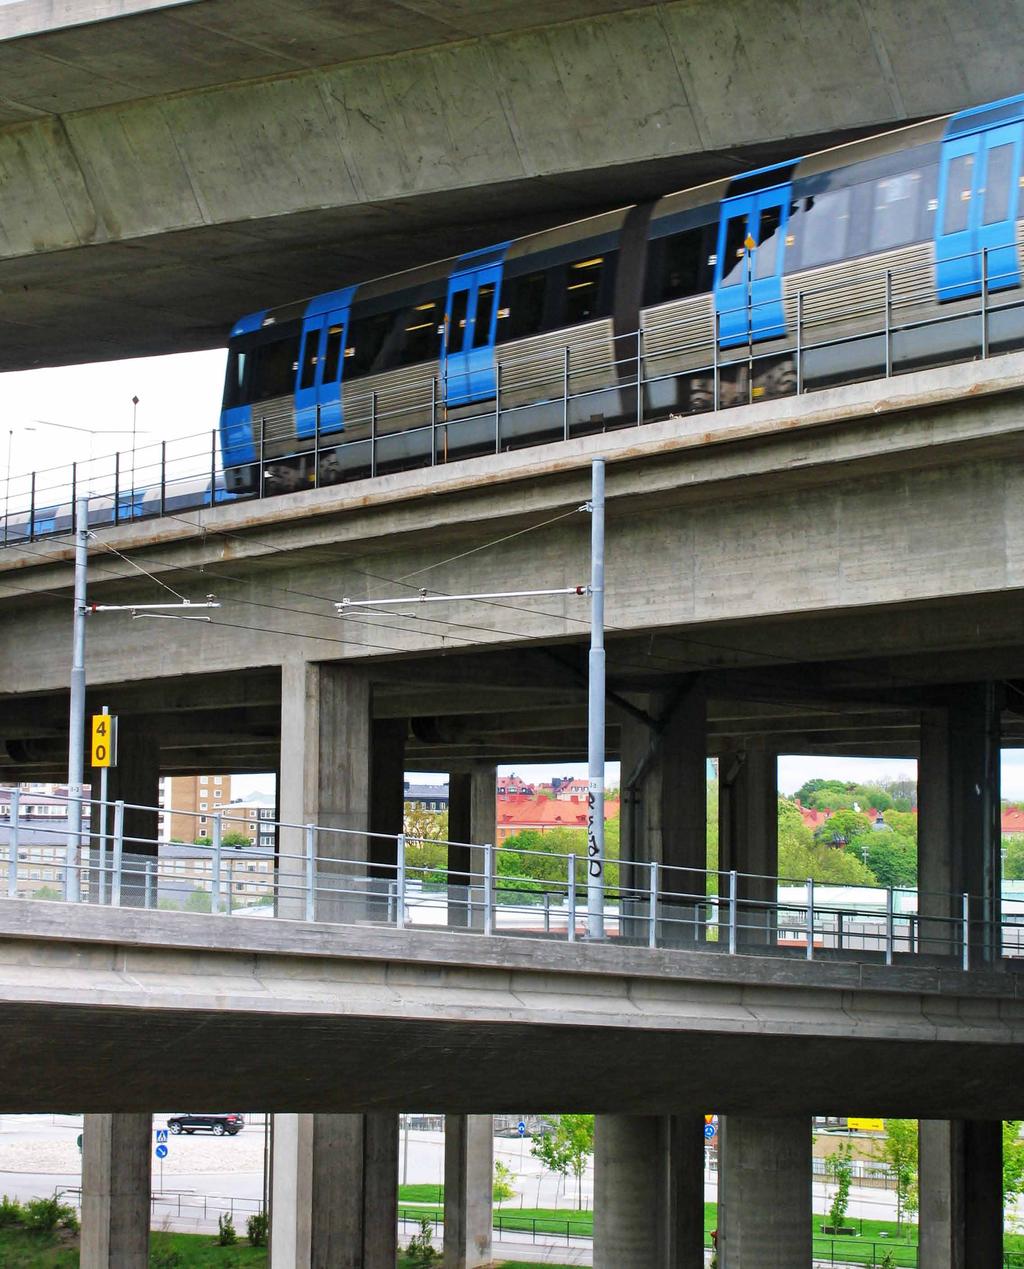 52 Stadsbyggnadsstrategier Komplett transportsystem med tunnelbana till NACKA Enligt befolkningsprognosen beräknas Nacka ha cirka 113 000 invånare år 2020.